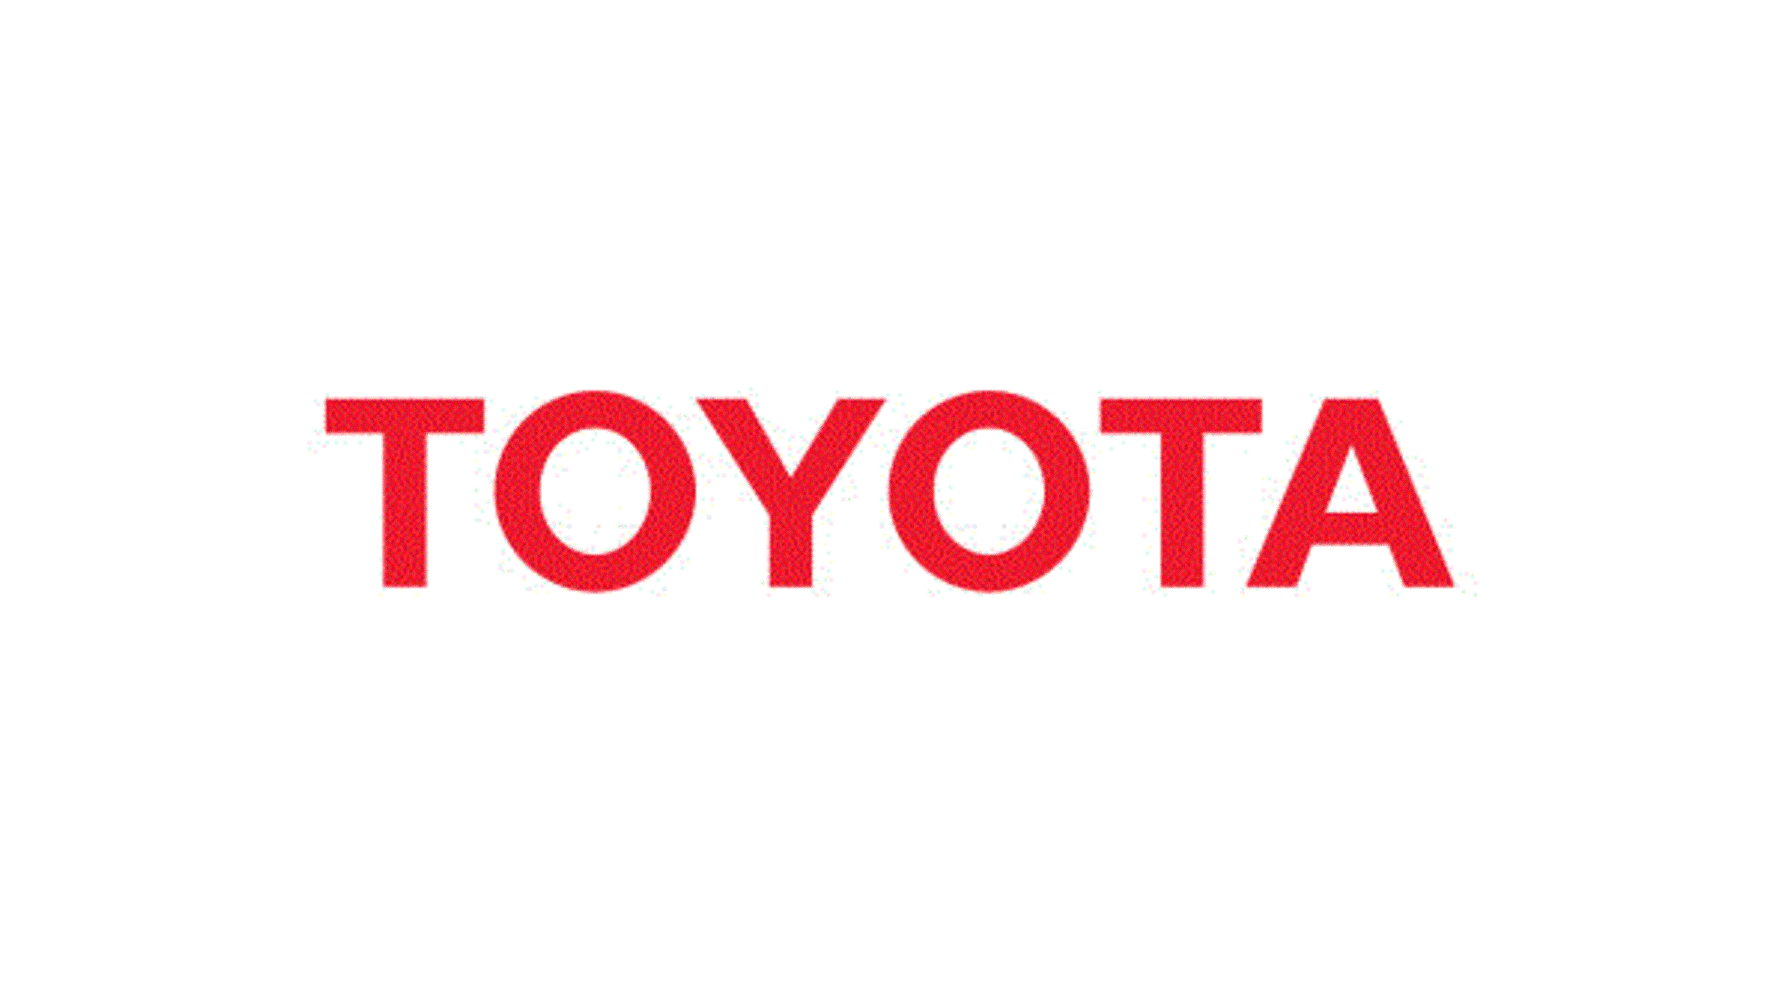 Toyota og Lexus er de mest pålitelige bilmerkene i følge ny rapport